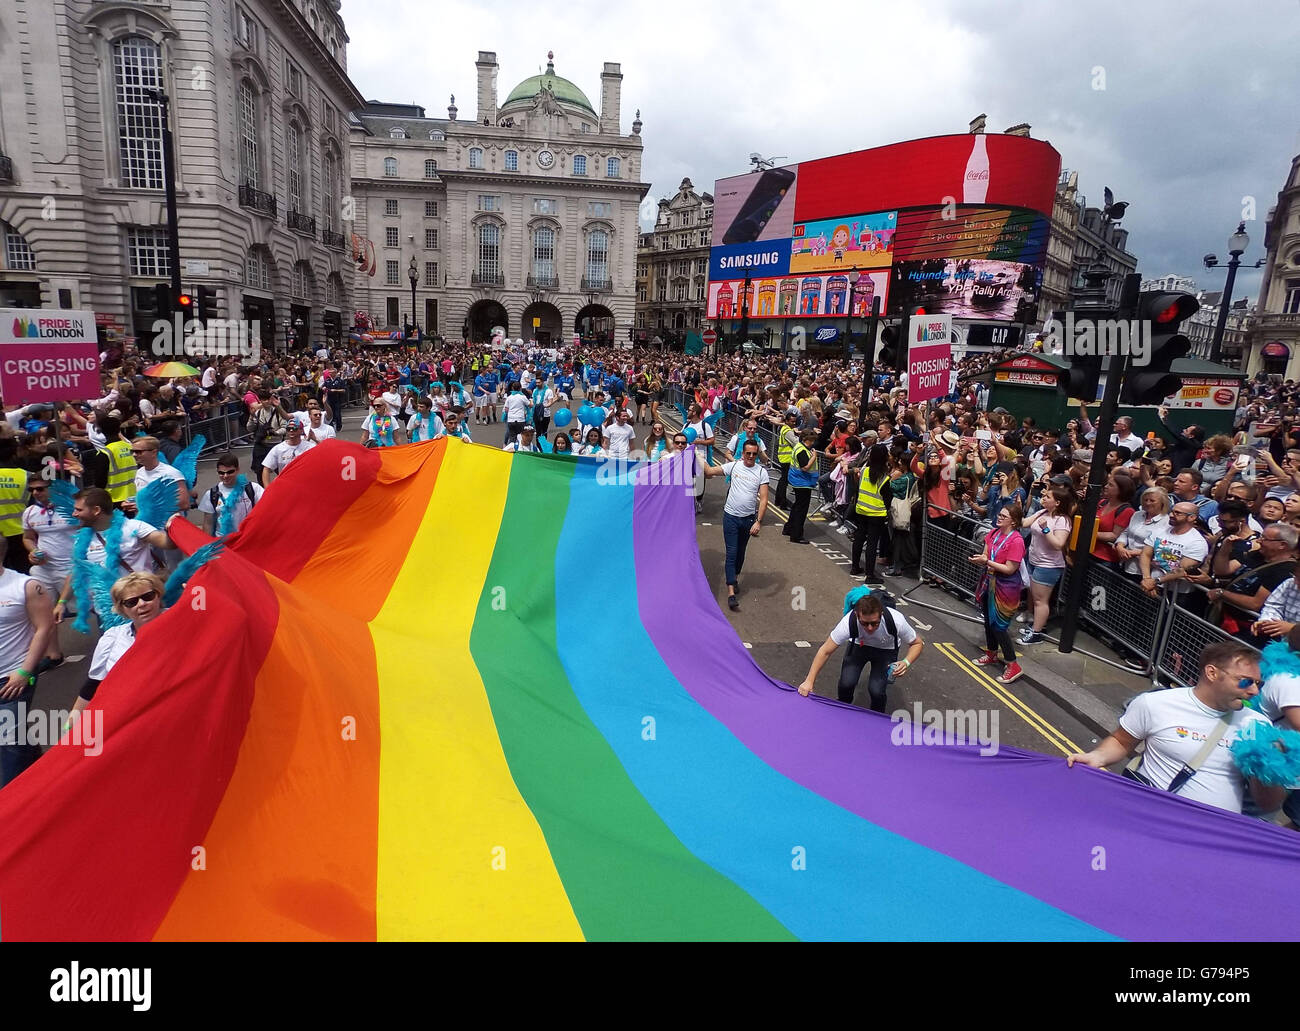 Londres, Royaume-Uni. 25 juin 2016. Drapeau Arc-en-ciel géant à la London Pride Parade à Londres, où le thème est # nofilter Crédit : Paul Brown/Alamy Live News Banque D'Images